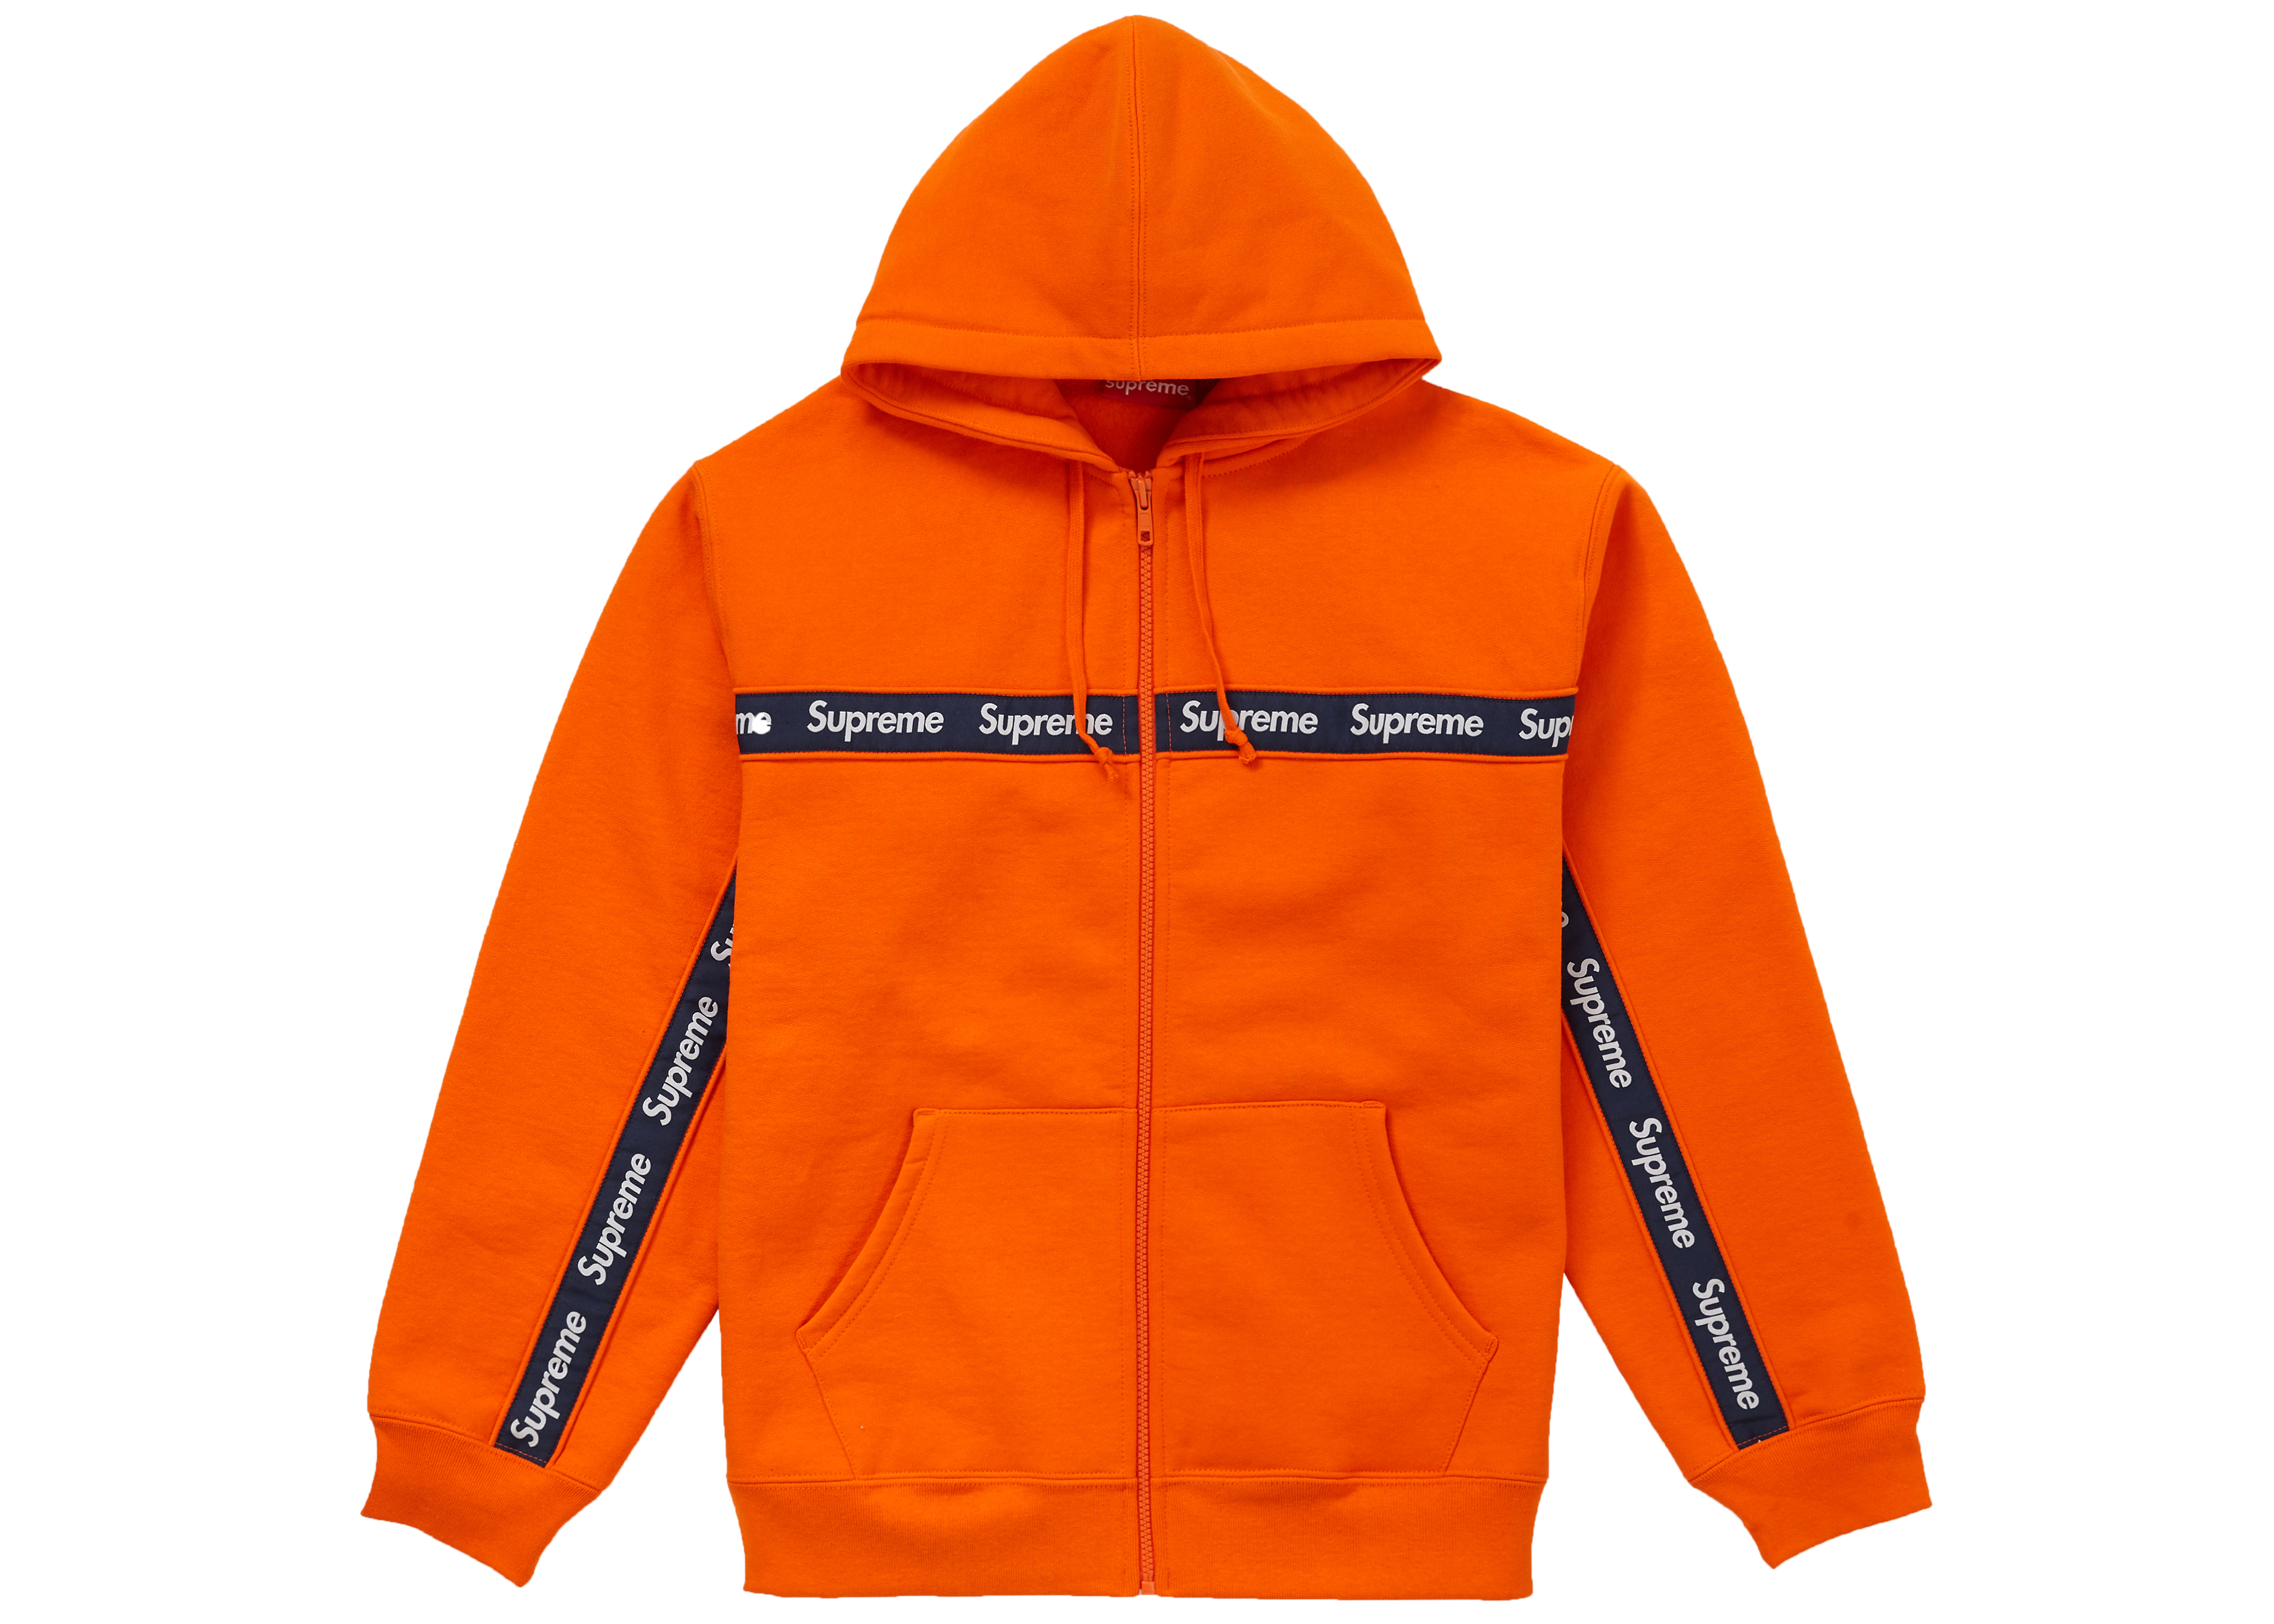 Supreme Text Stripe Zip Up Hooded Sweatshirt Orange - FW19 Men's - US